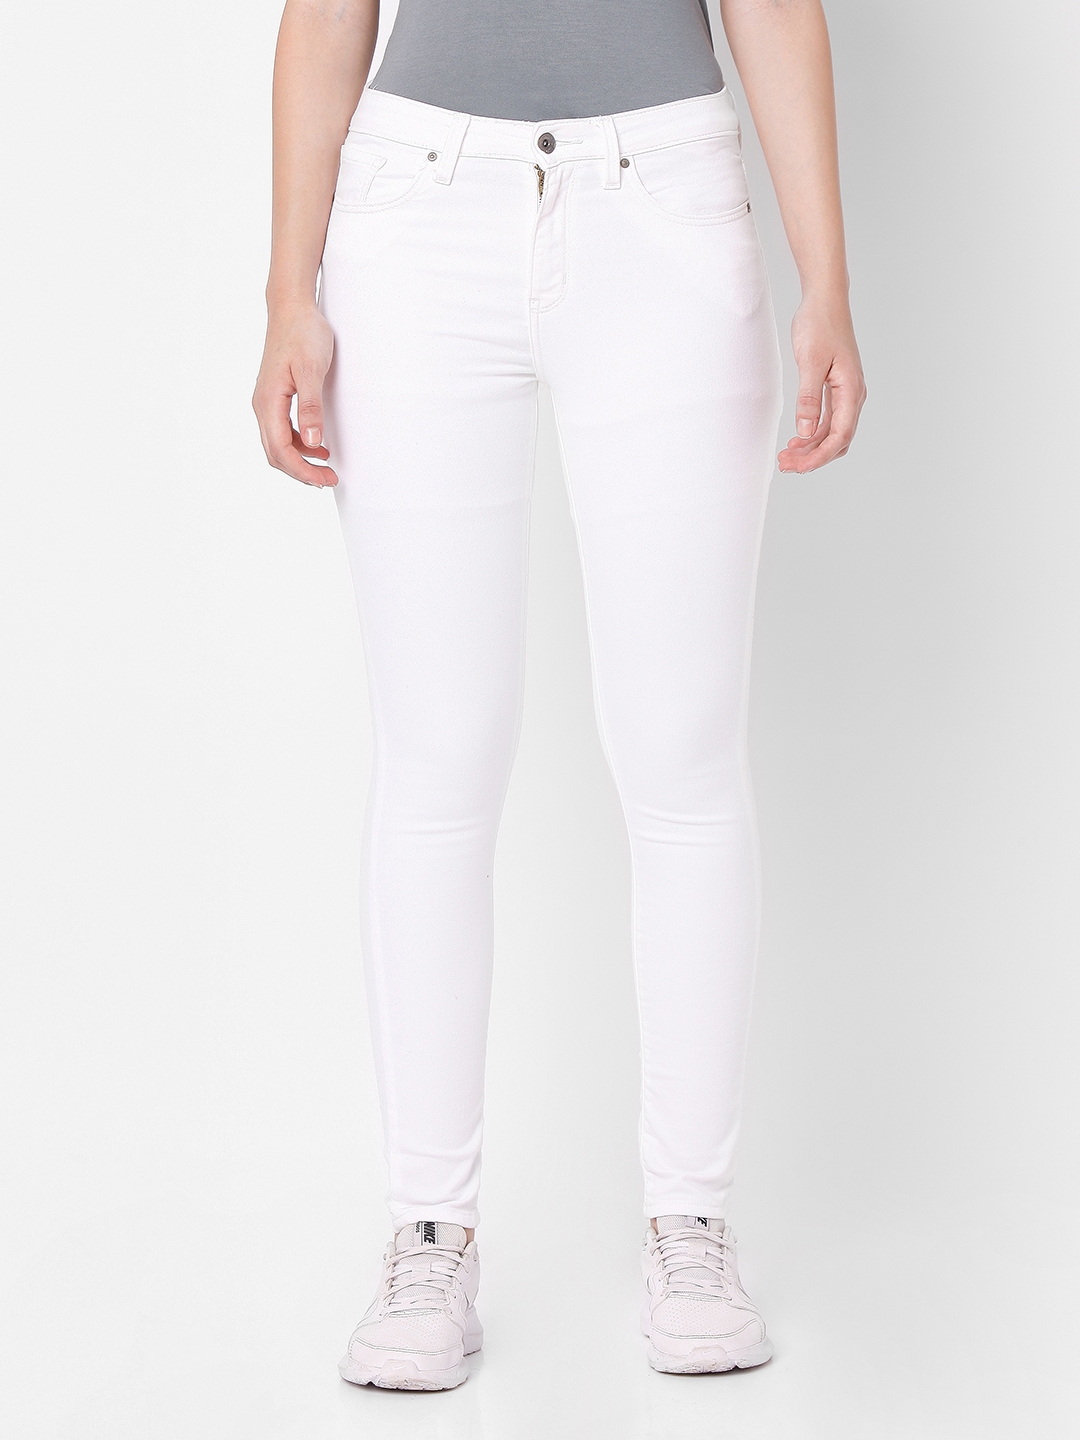 Spykar | Spykar White Cotton Skinny Fit Regular Length Jeans For Women